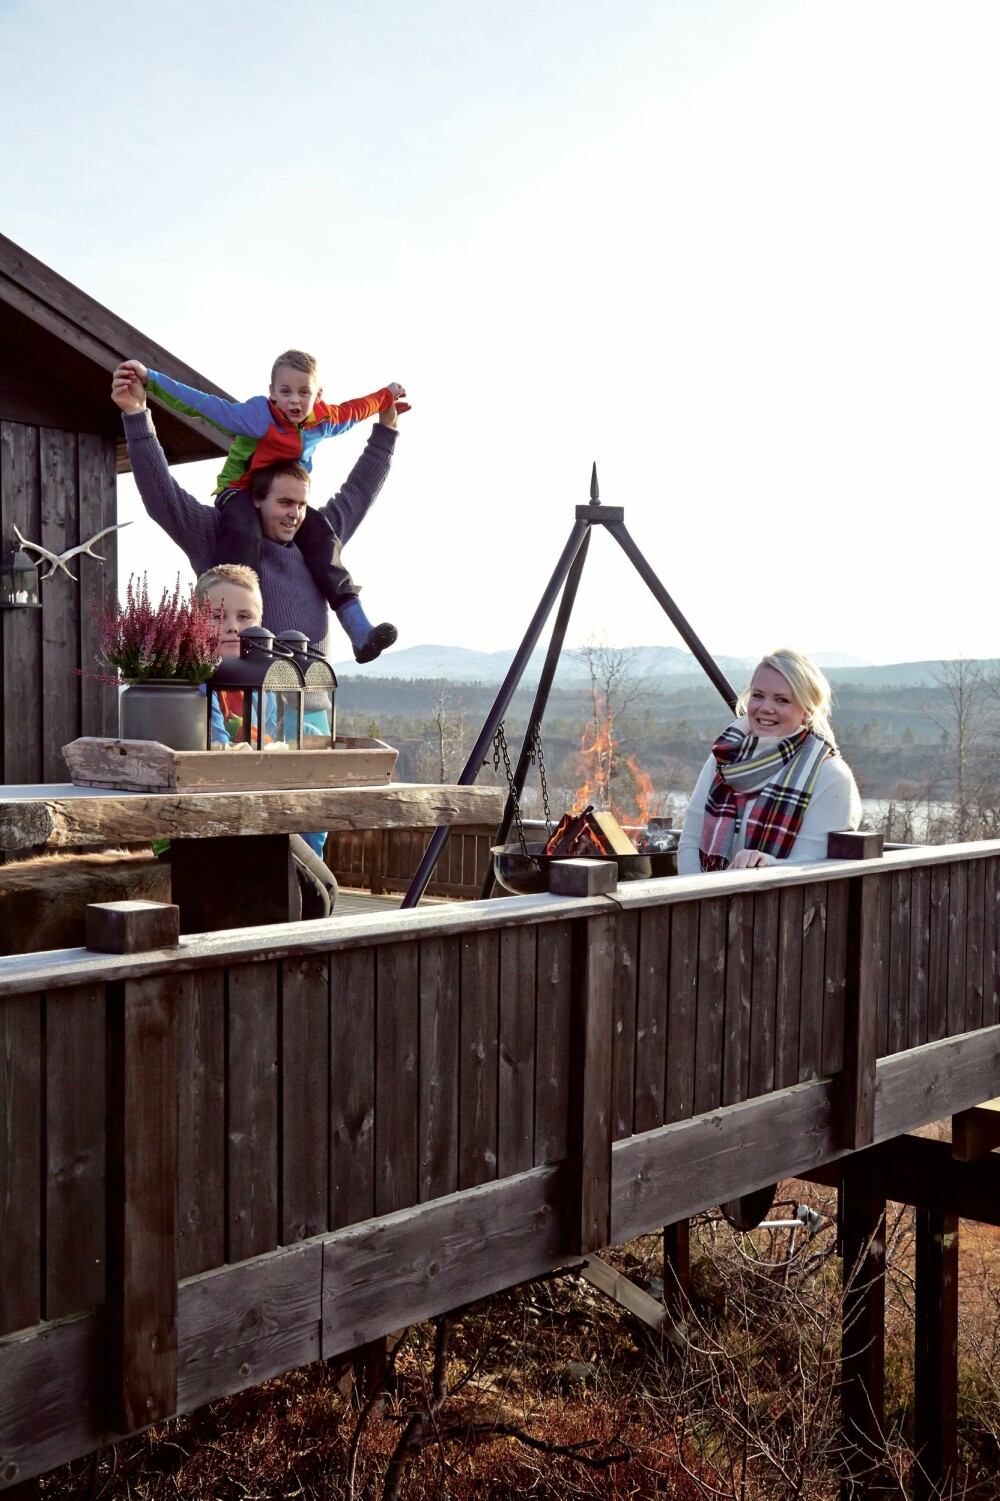 FAMILIEGLEDE: Sander, Svein Ola med Sindre på skuldrene og Solveig trives ute ved bålpannen på terrassen.